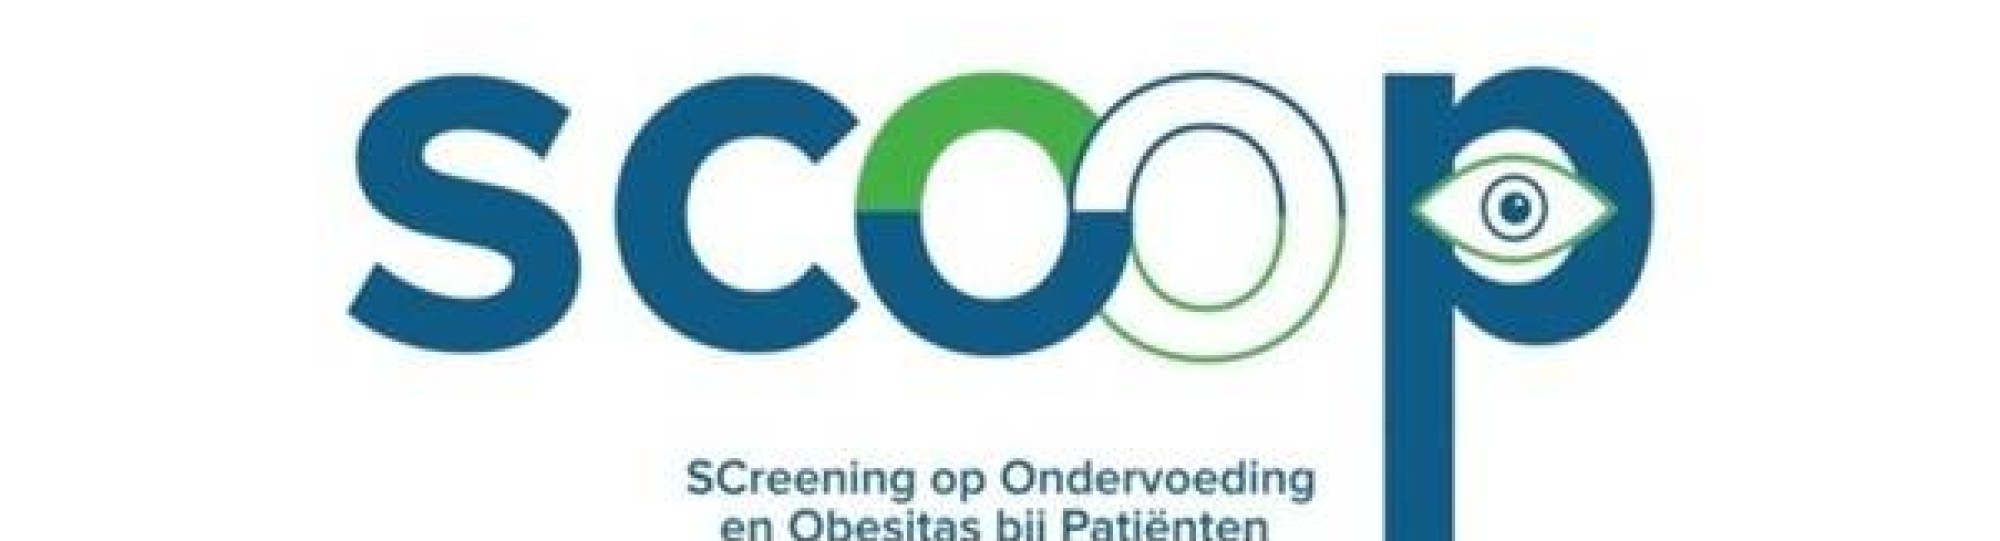 Logo Scoop project: Screening op Ondervoeding en Obestitas bij Patiënten.